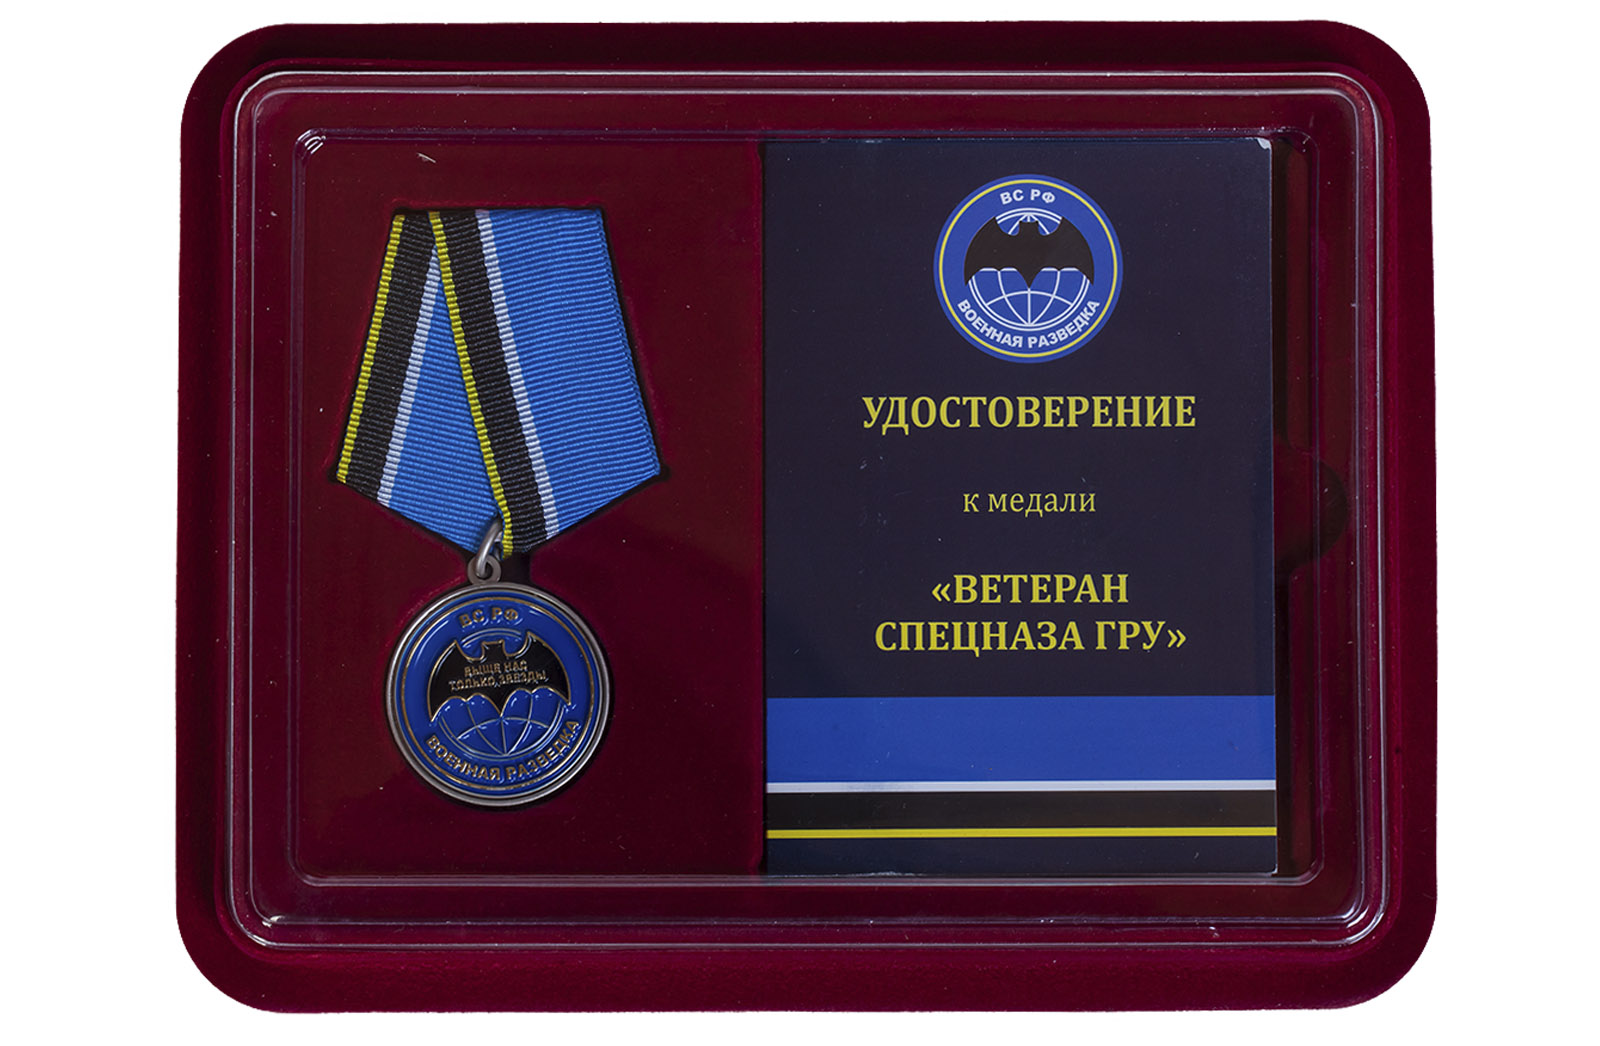 Купить общественную медаль "Ветеран спецназа ГРУ" с доставкой в ваш город